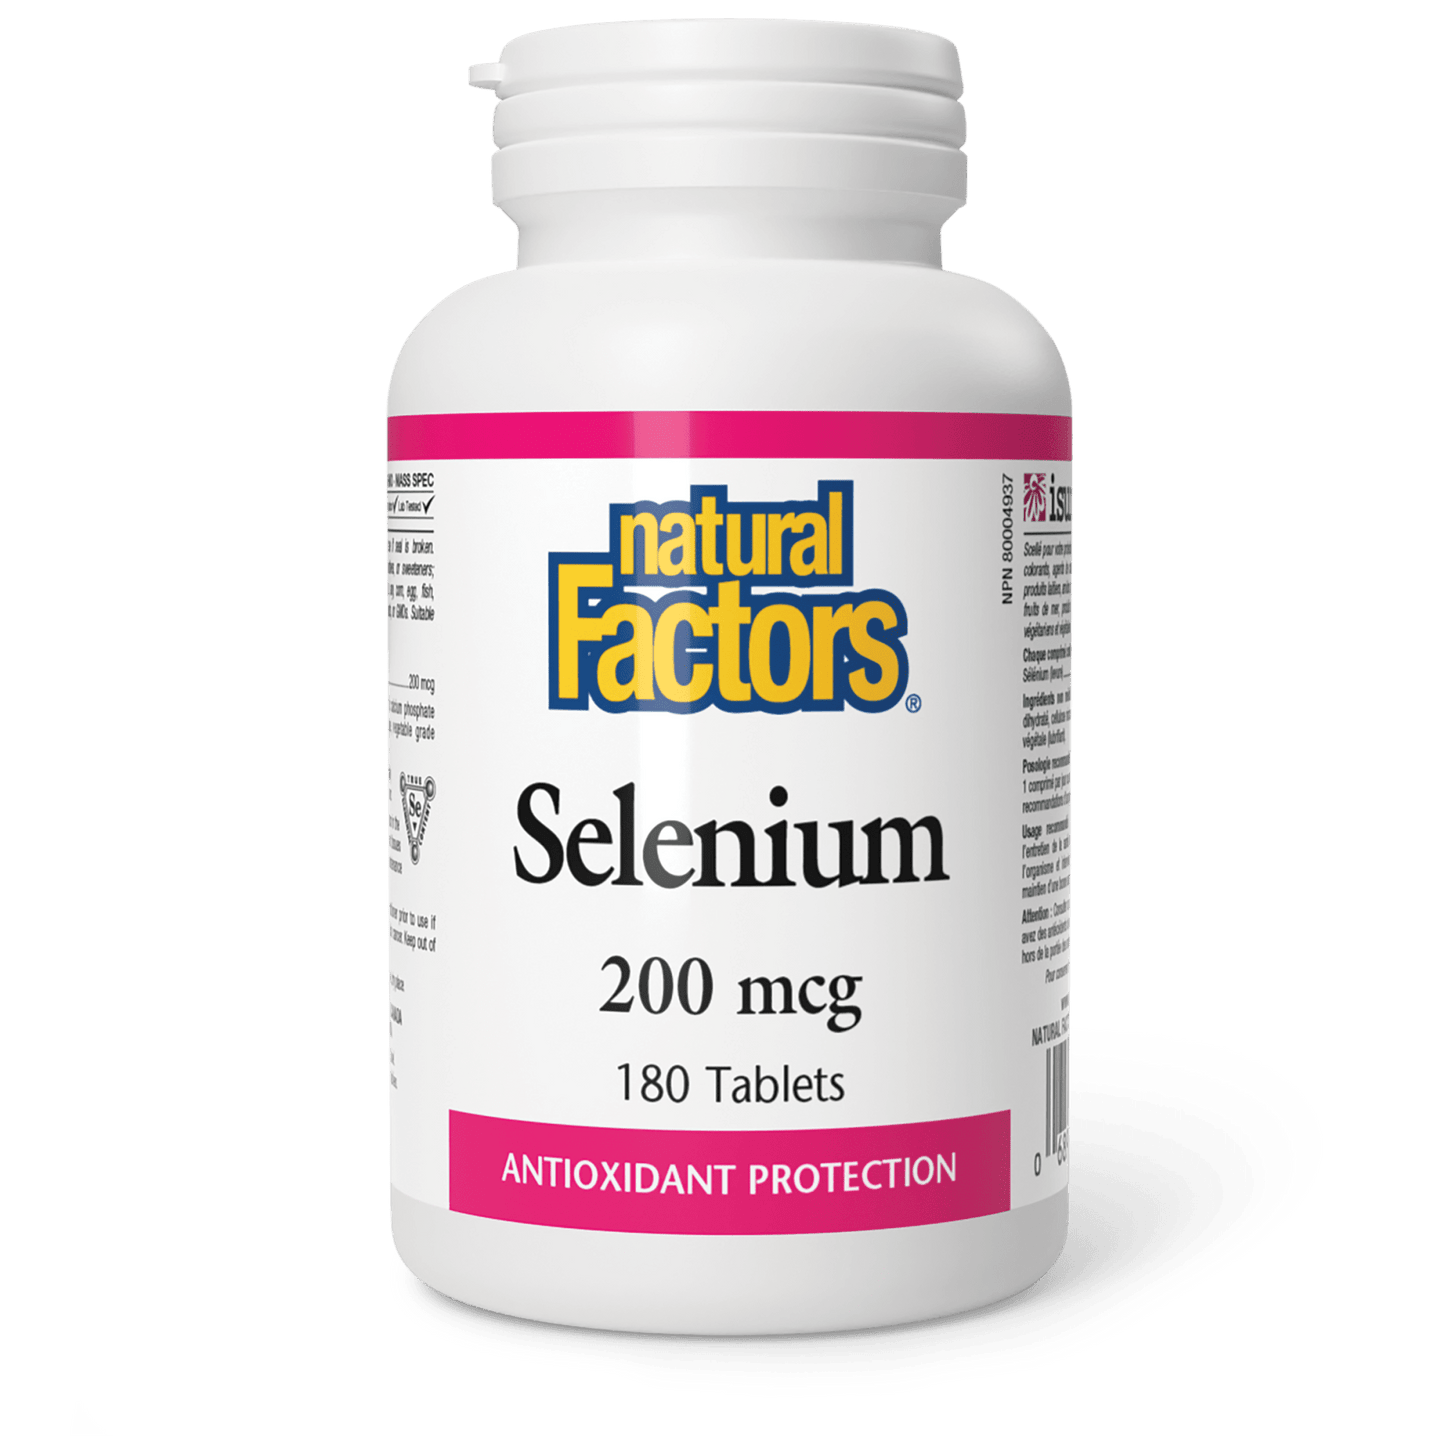 Selenium 200 mcg, Natural Factors|v|image|1672